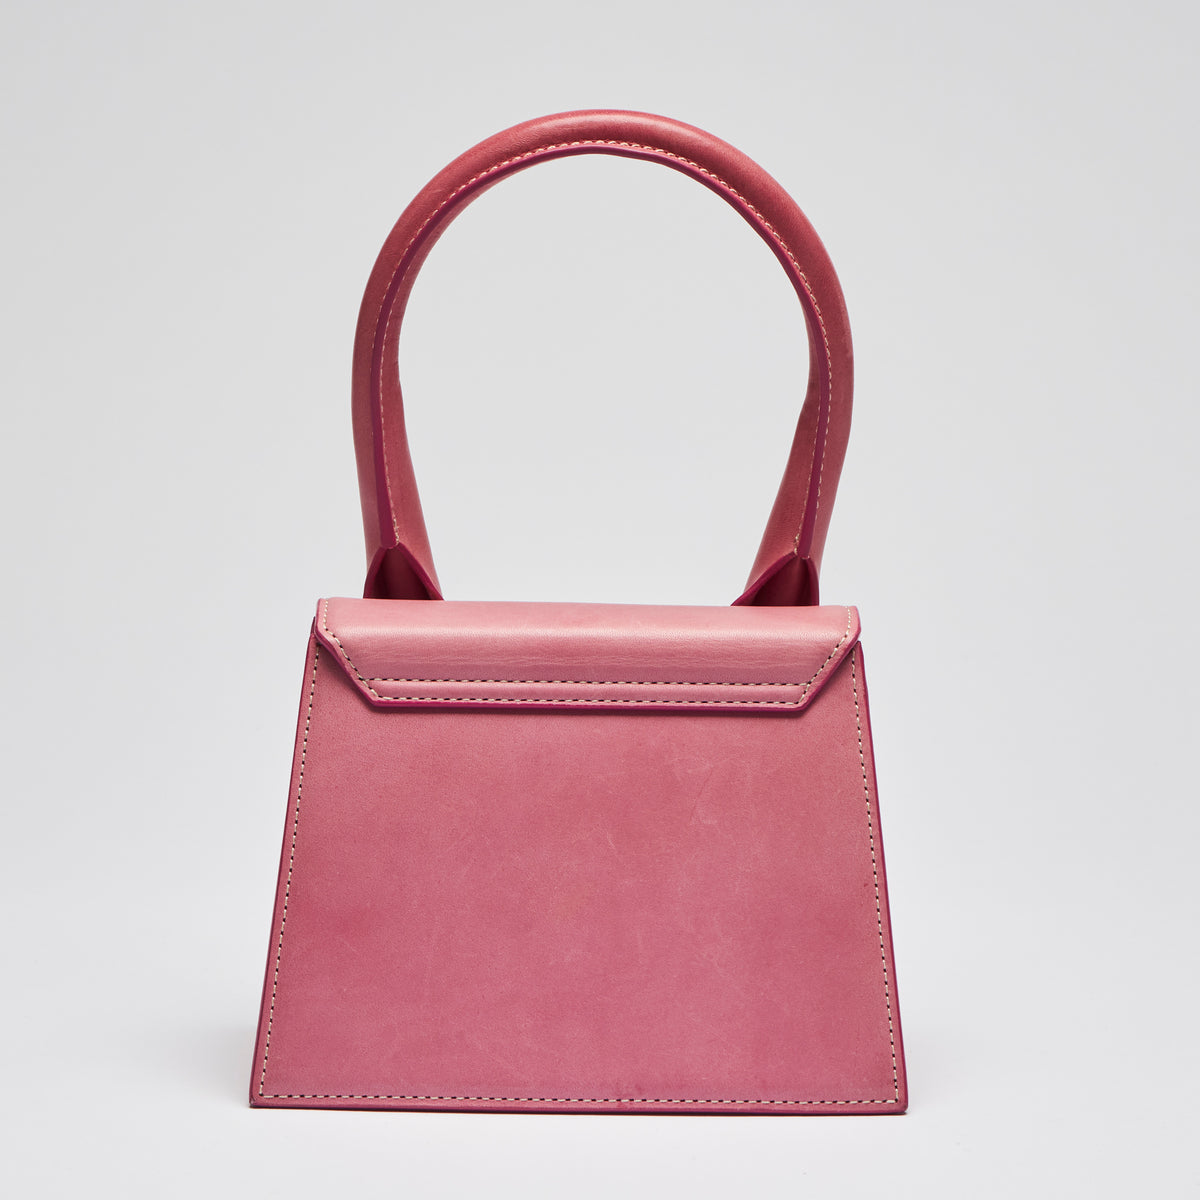 Pre-Loved Pink Leather Single Top Handle Mini Bag with Removable/Adjustable Shoulder Strap. (back)